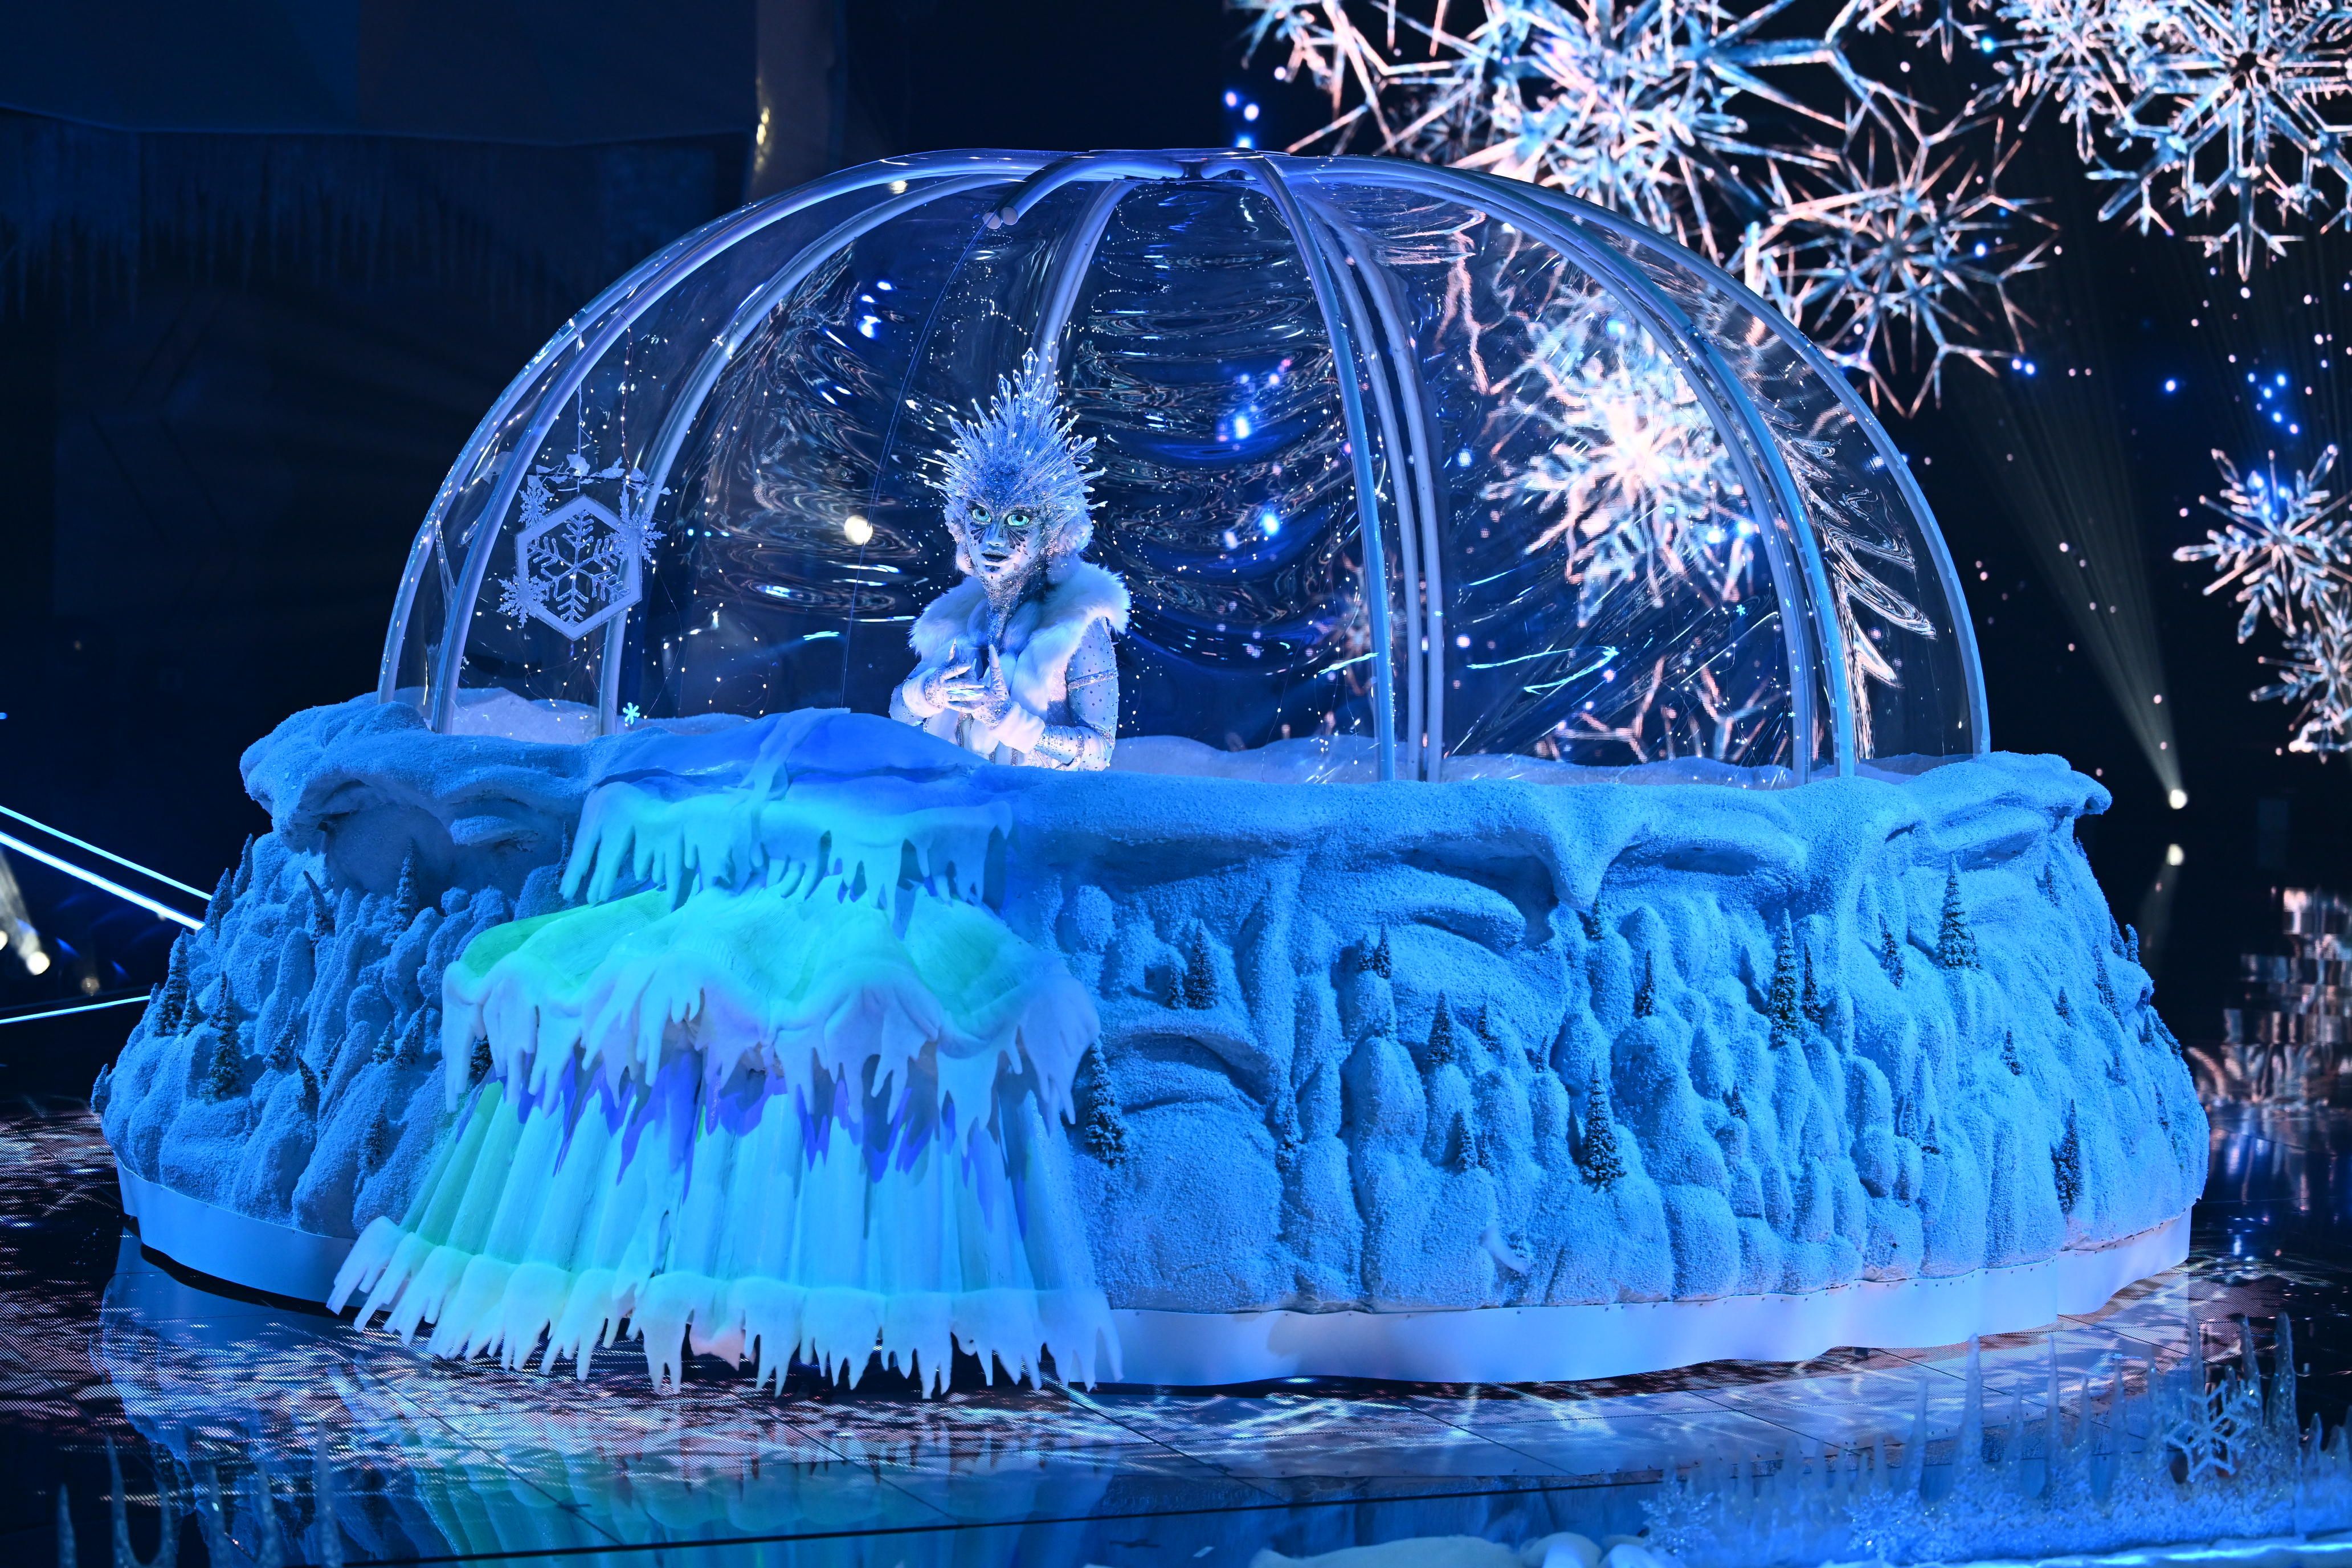 Warme Stimme in kalter Welt: Die Eisprinzessin, in ihrem Schneekleid mit dem überdimensionalen Frostrock, bringt die Herzen zum Schmelzen.